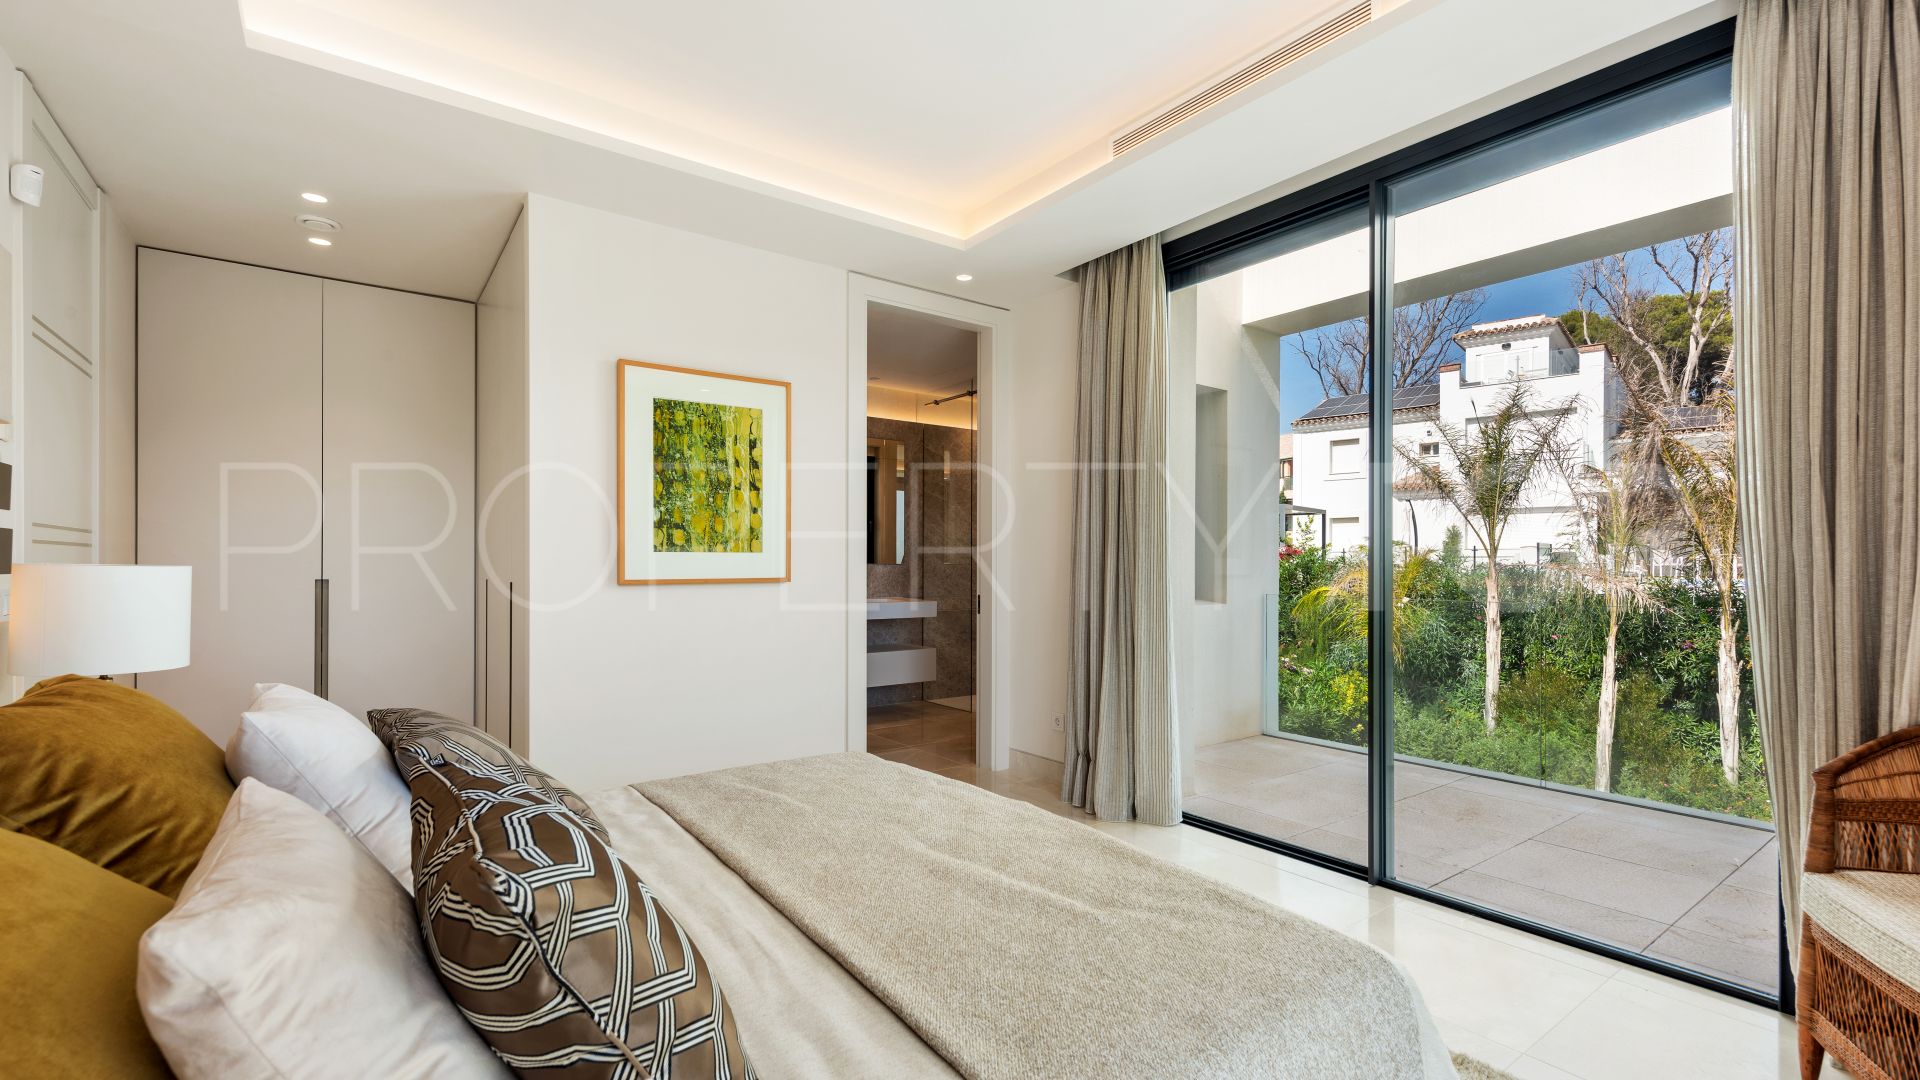 5 bedrooms Real de Zaragoza villa for sale